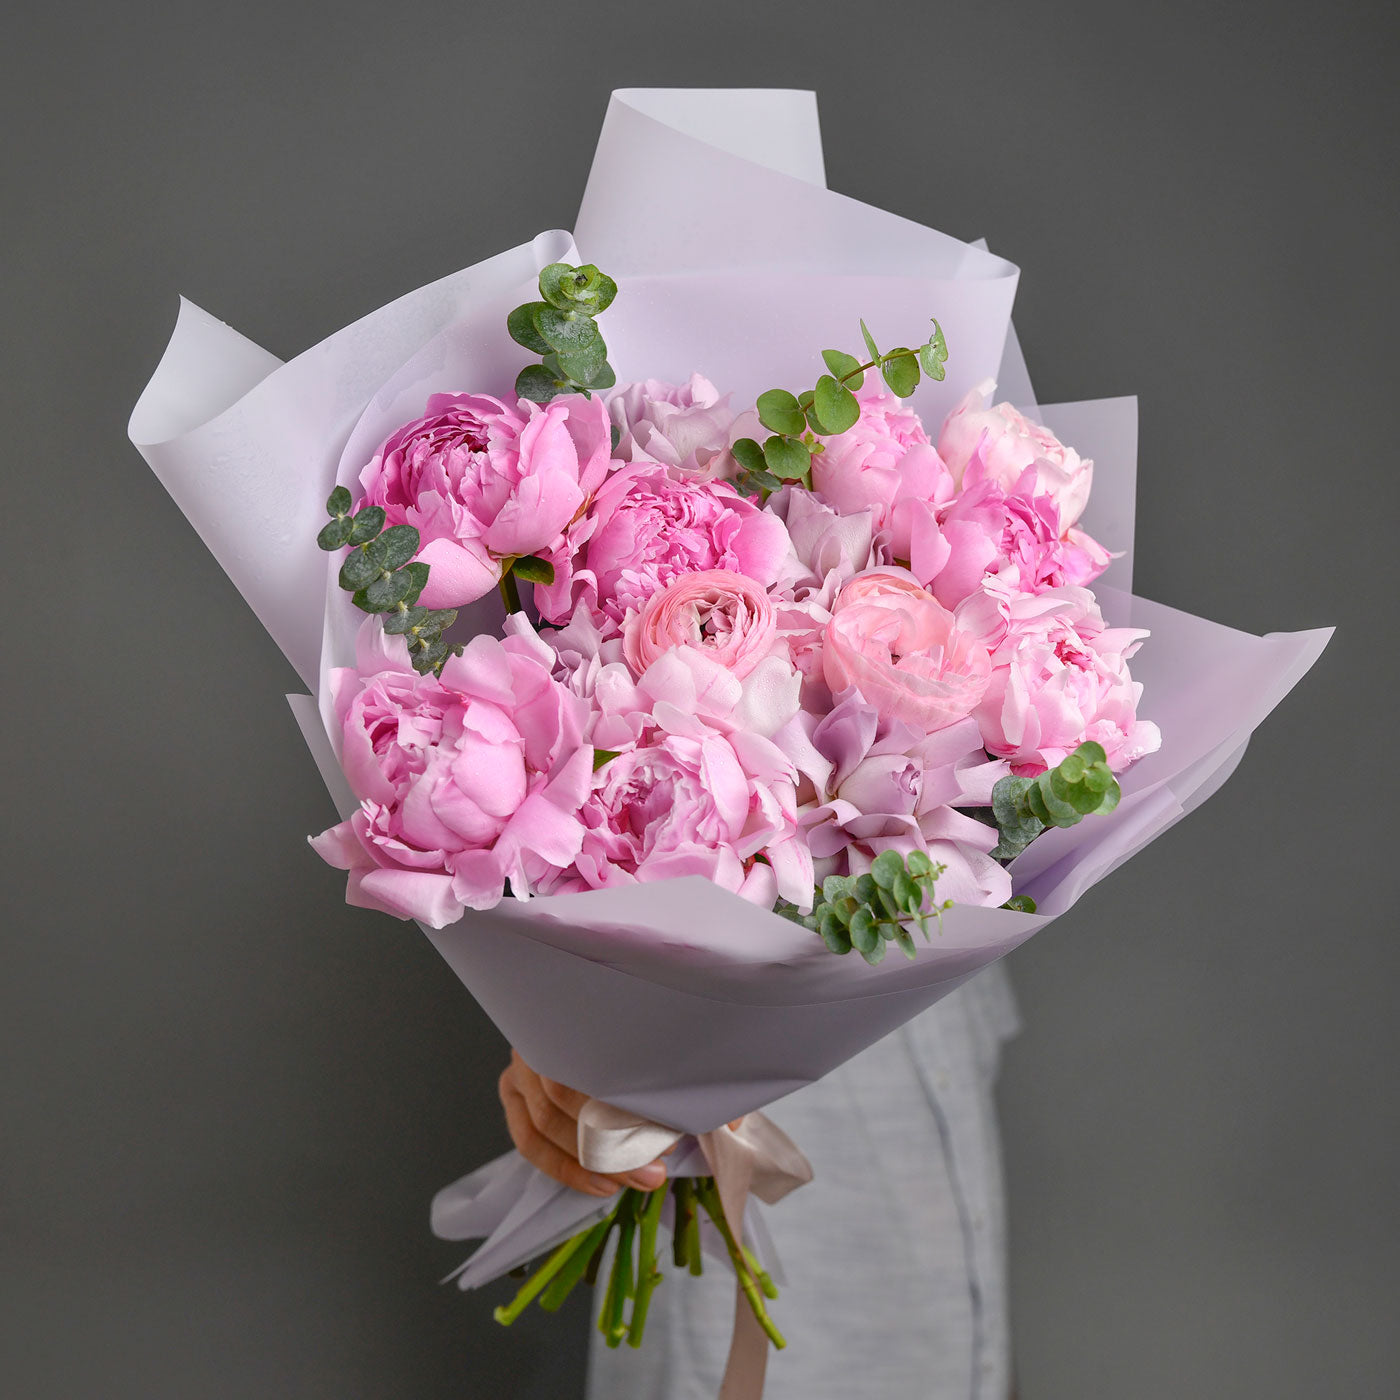 Buchet bujori naturali roz, trandafiri si ranunculus roz, 2